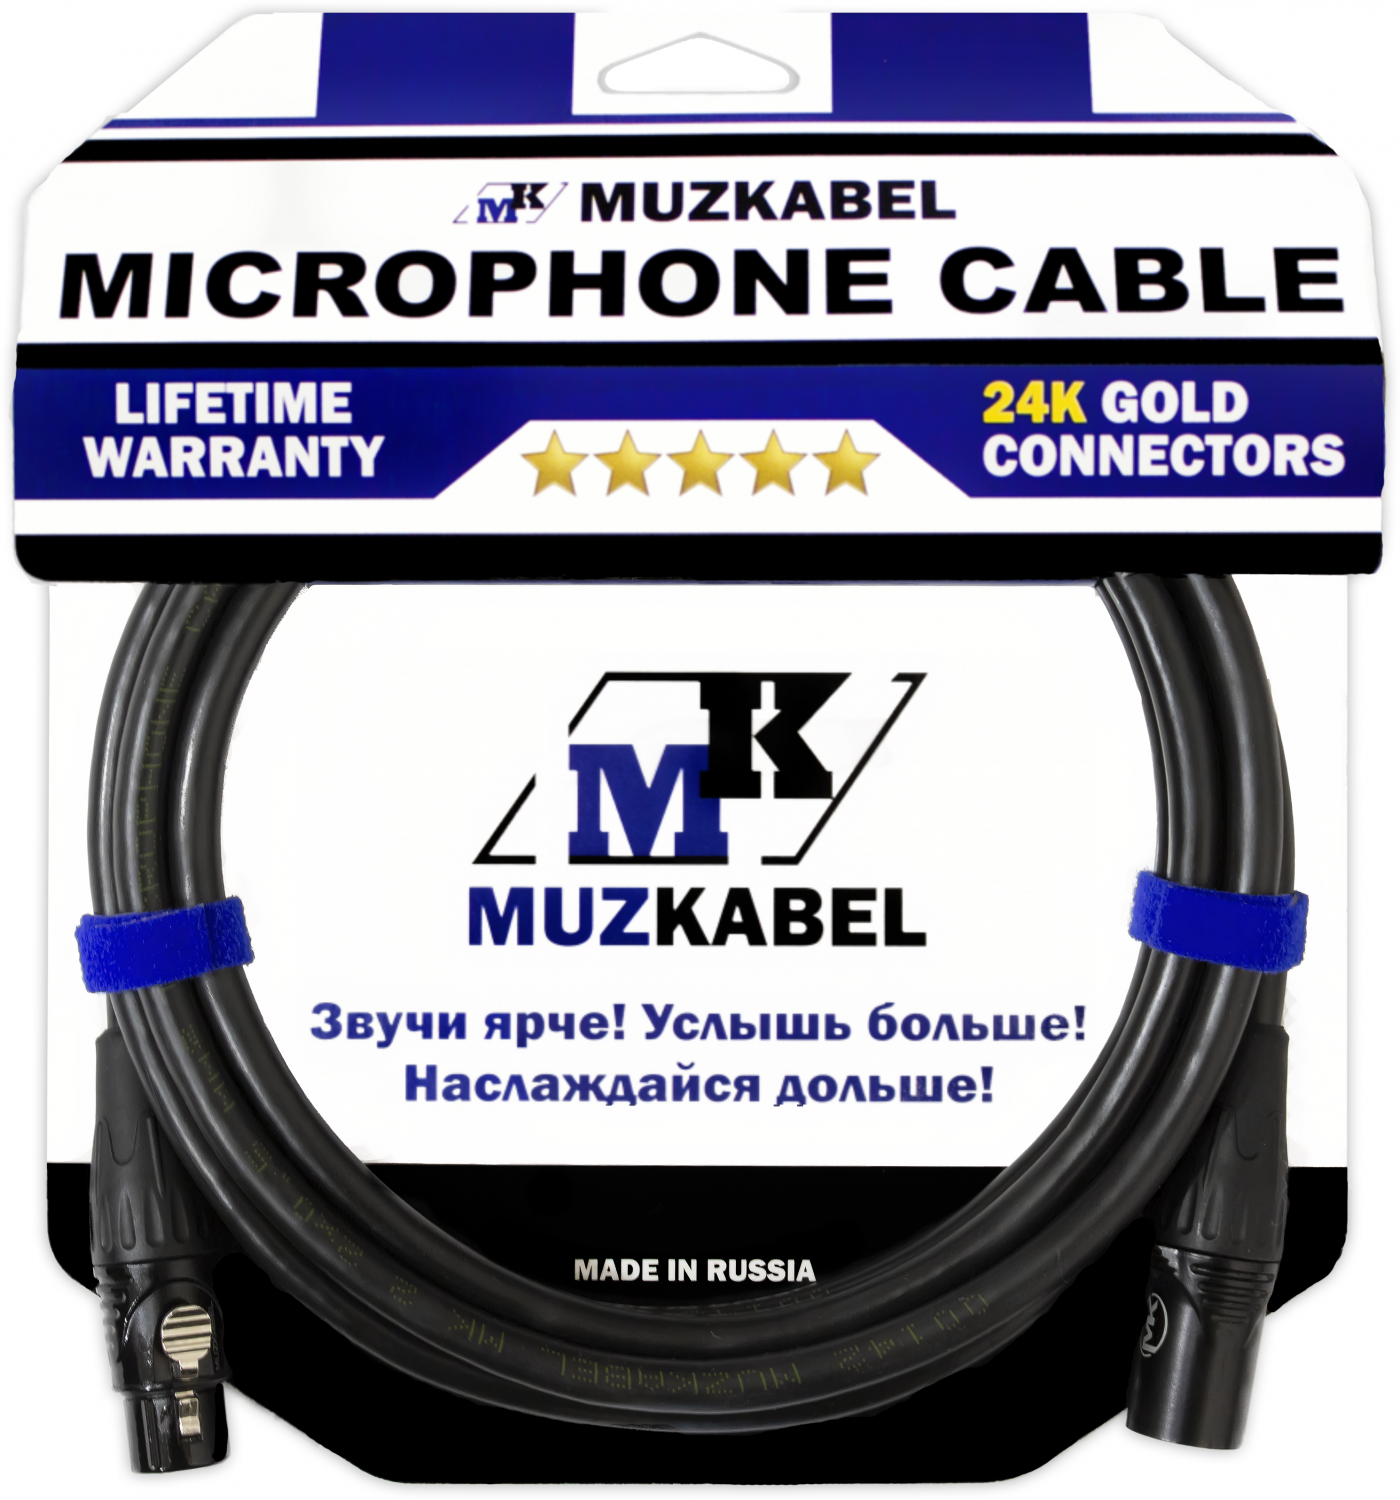 Микрофонный кабель MUZKABEL MBXMK2 - 10 метров, XLR - XLR